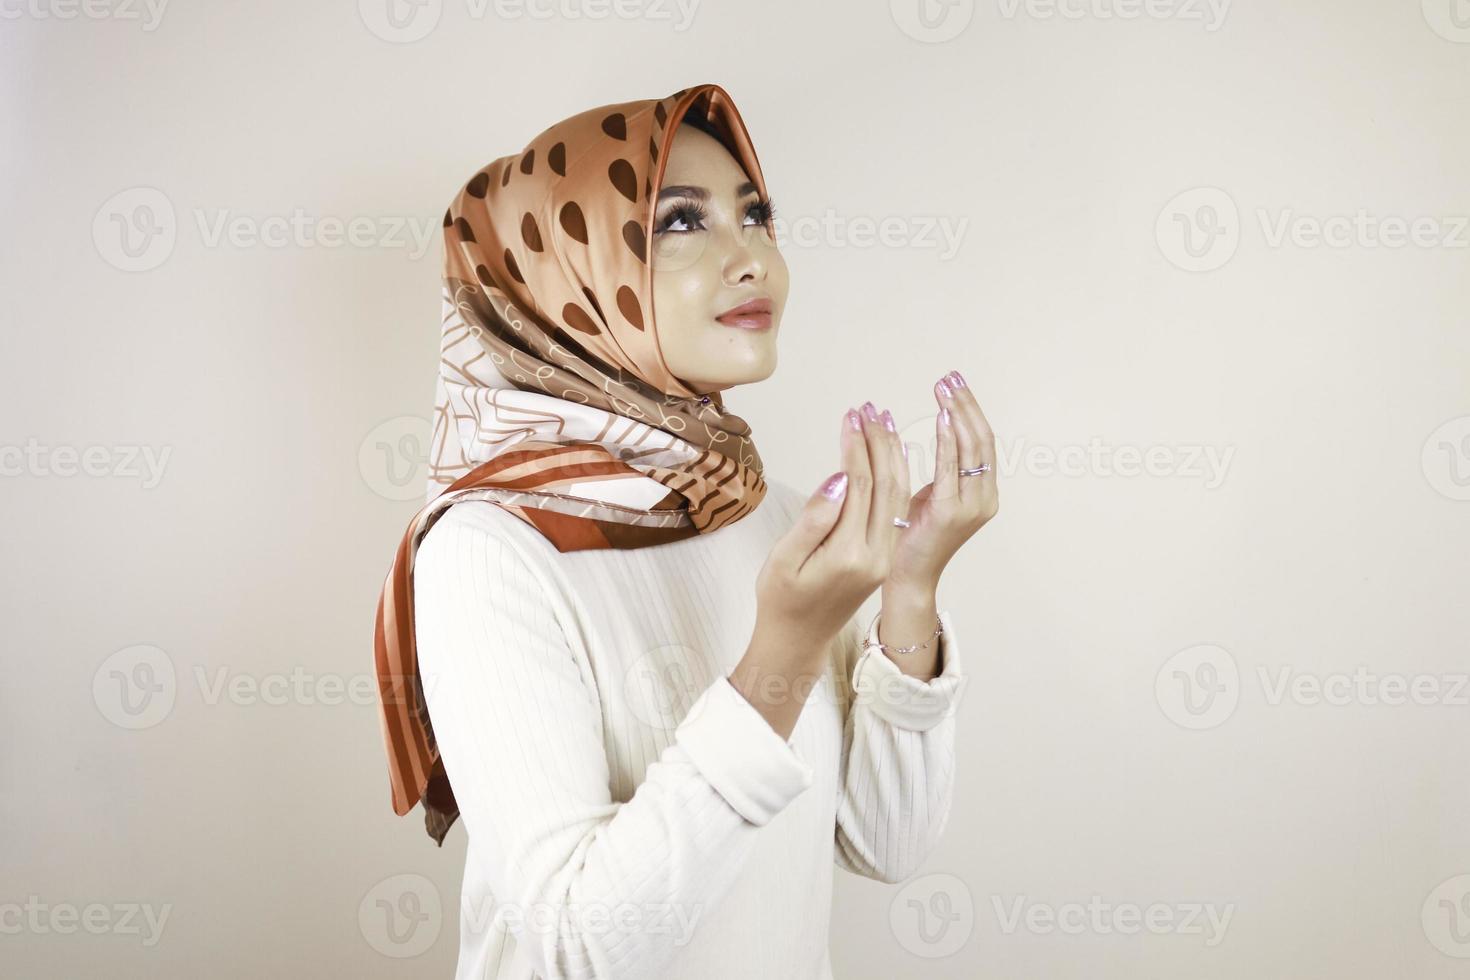 gelukkig mooi aziatisch moslimmeisje dat een hoofddoek draagt die tot god bidt. foto